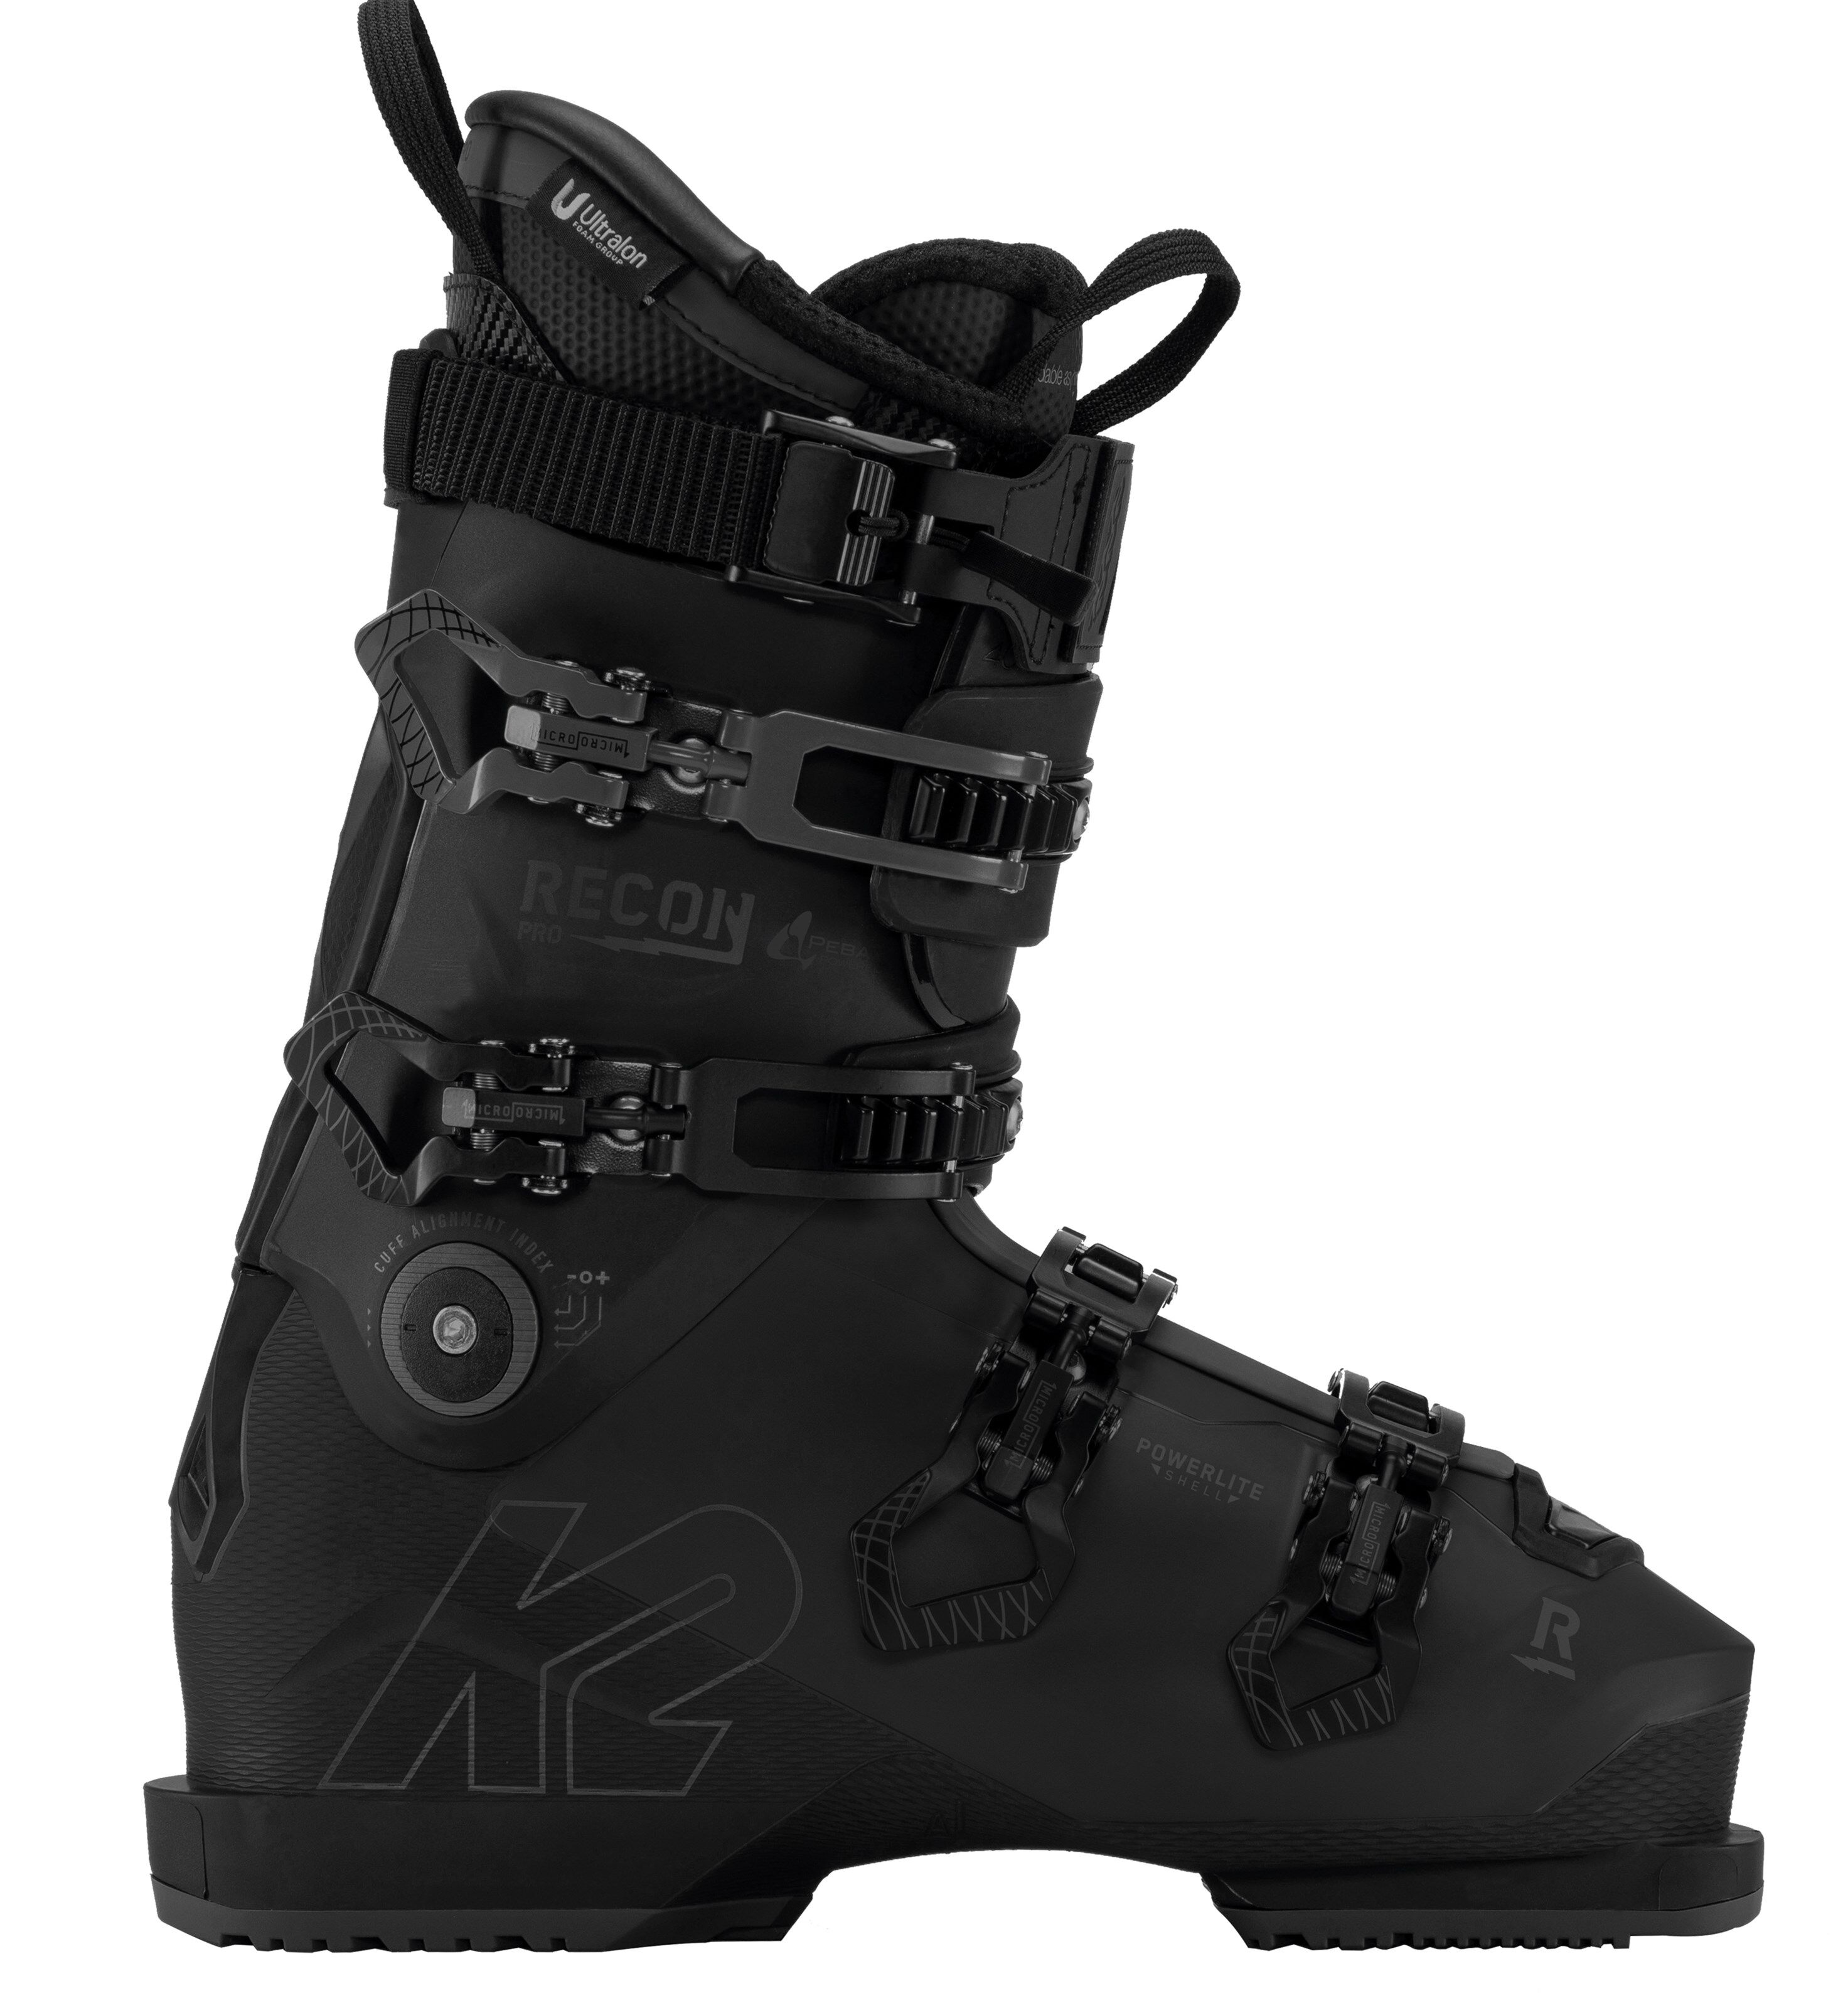 K2 Recon Pro alpinstøvler, herre 21/22  26,5 2021